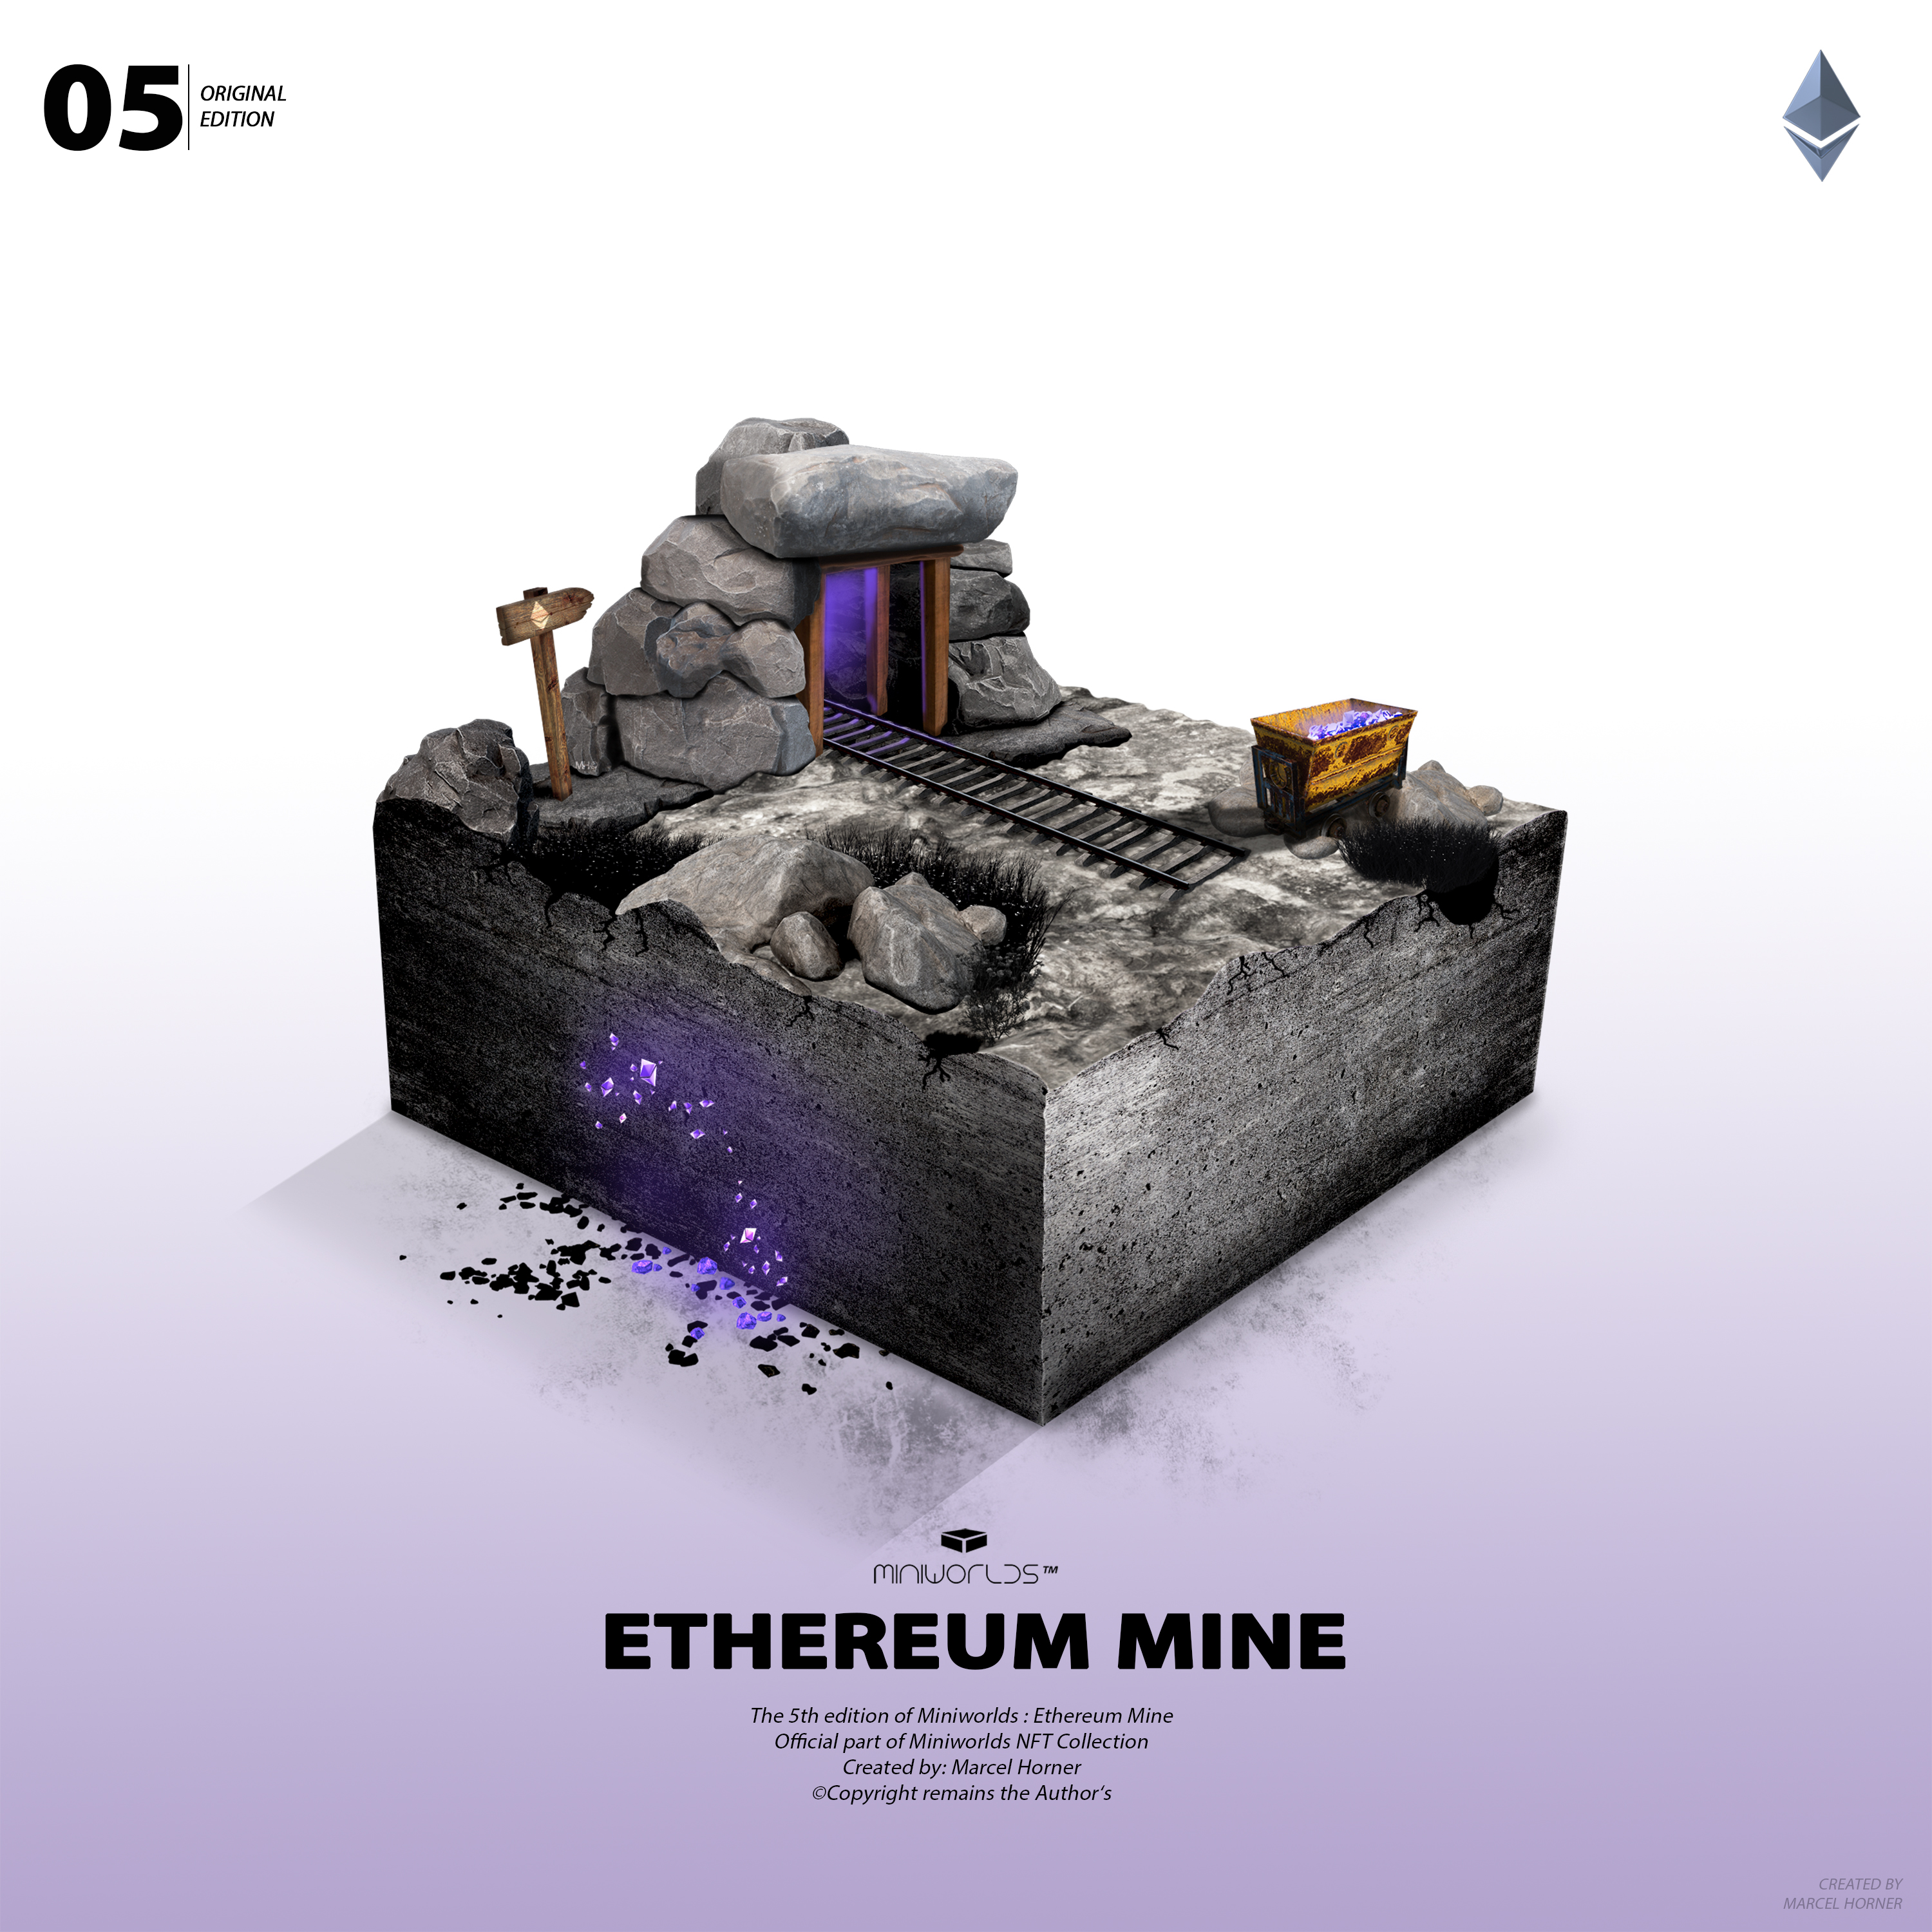 Miniworlds: Ethereum Mine #05